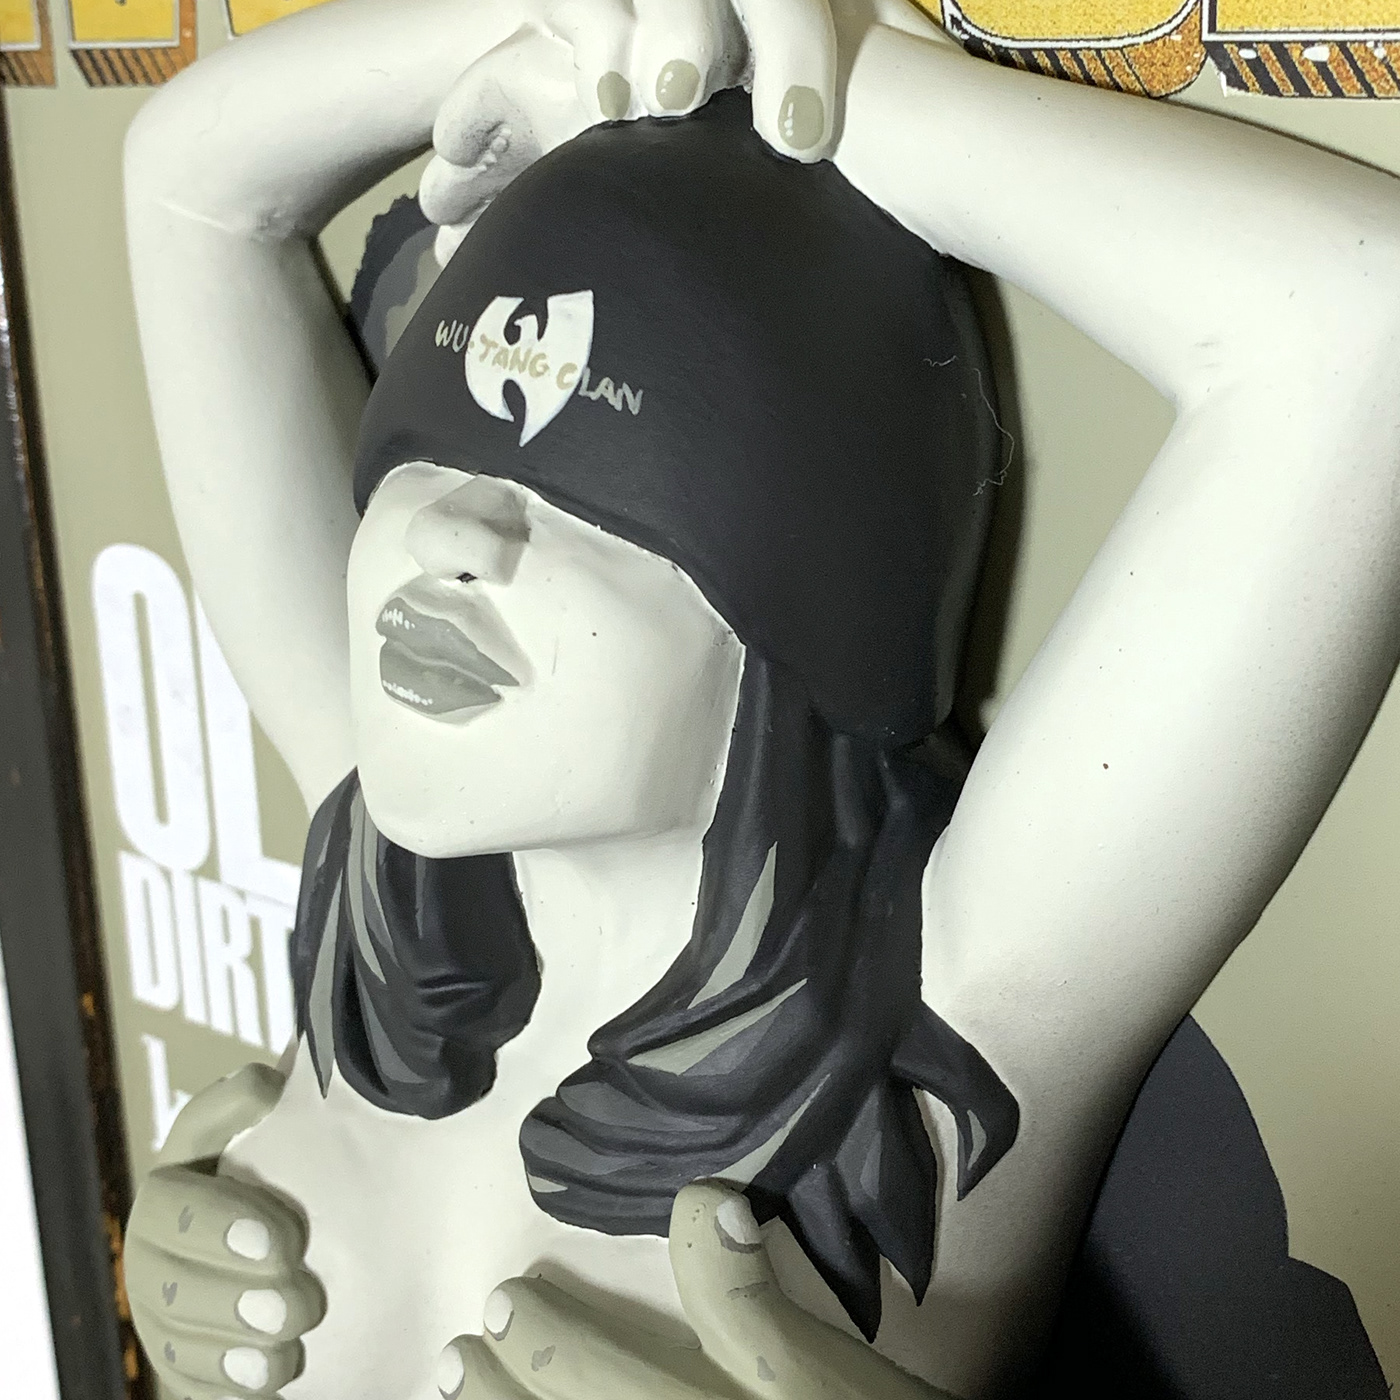 rap magazine cover sculpture wallart wutang toy